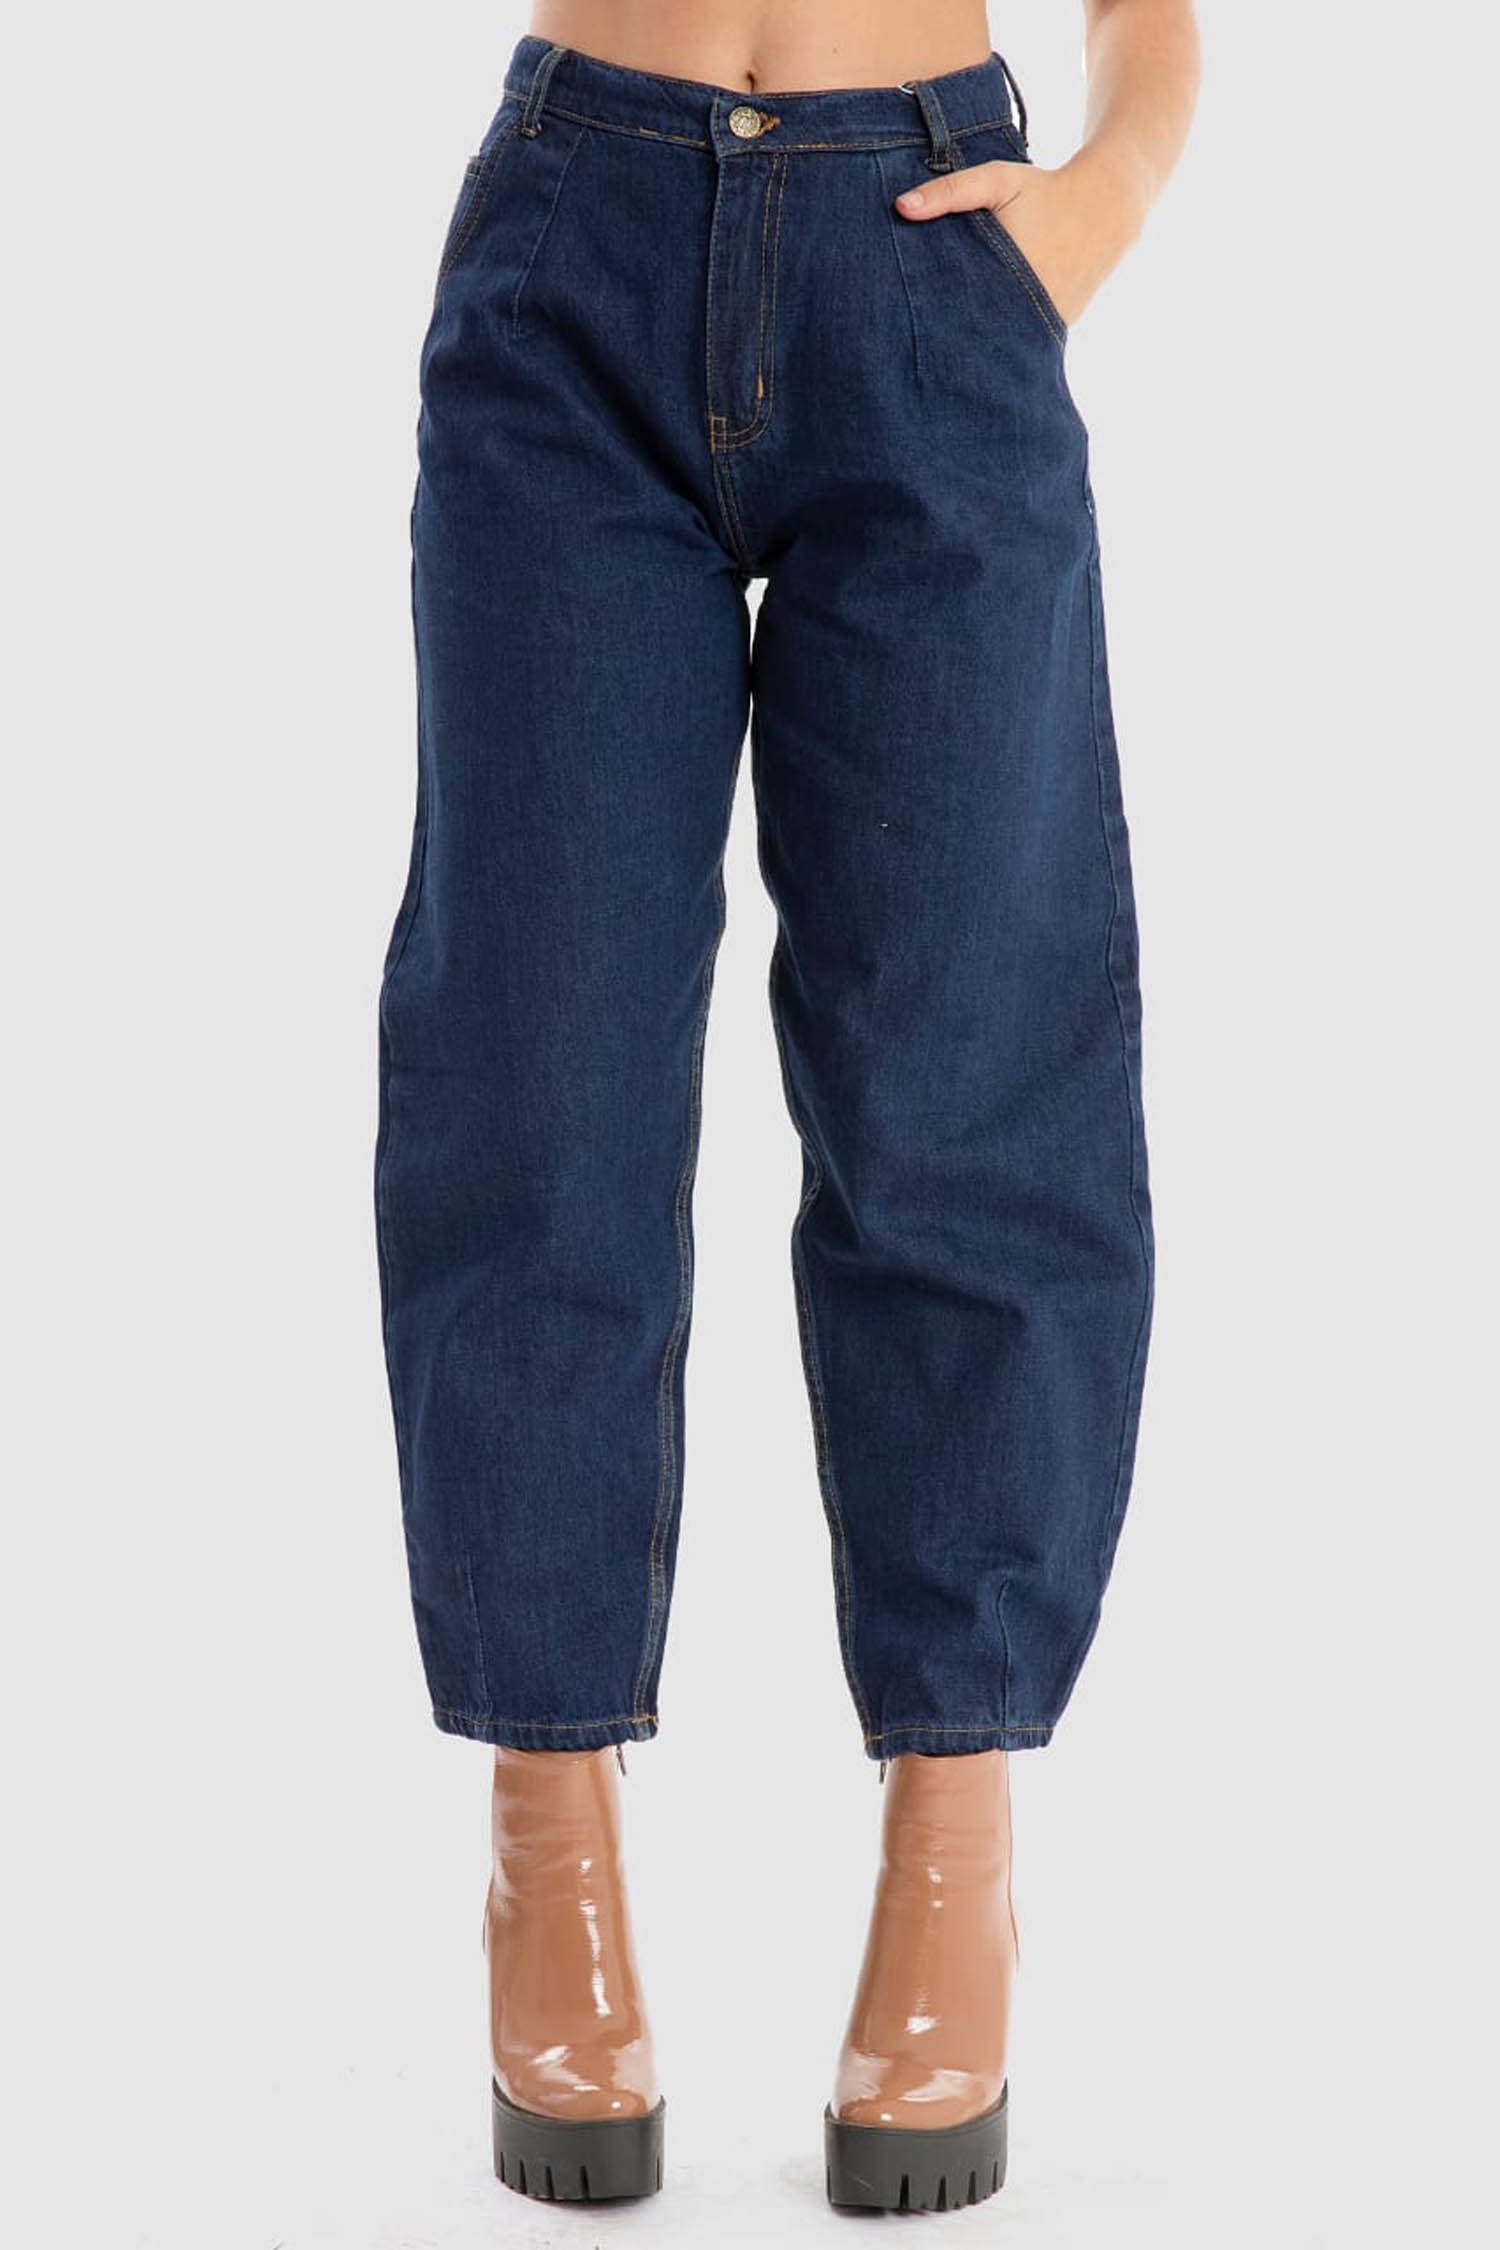 Kava Women Boy Friend Jeans (4047)